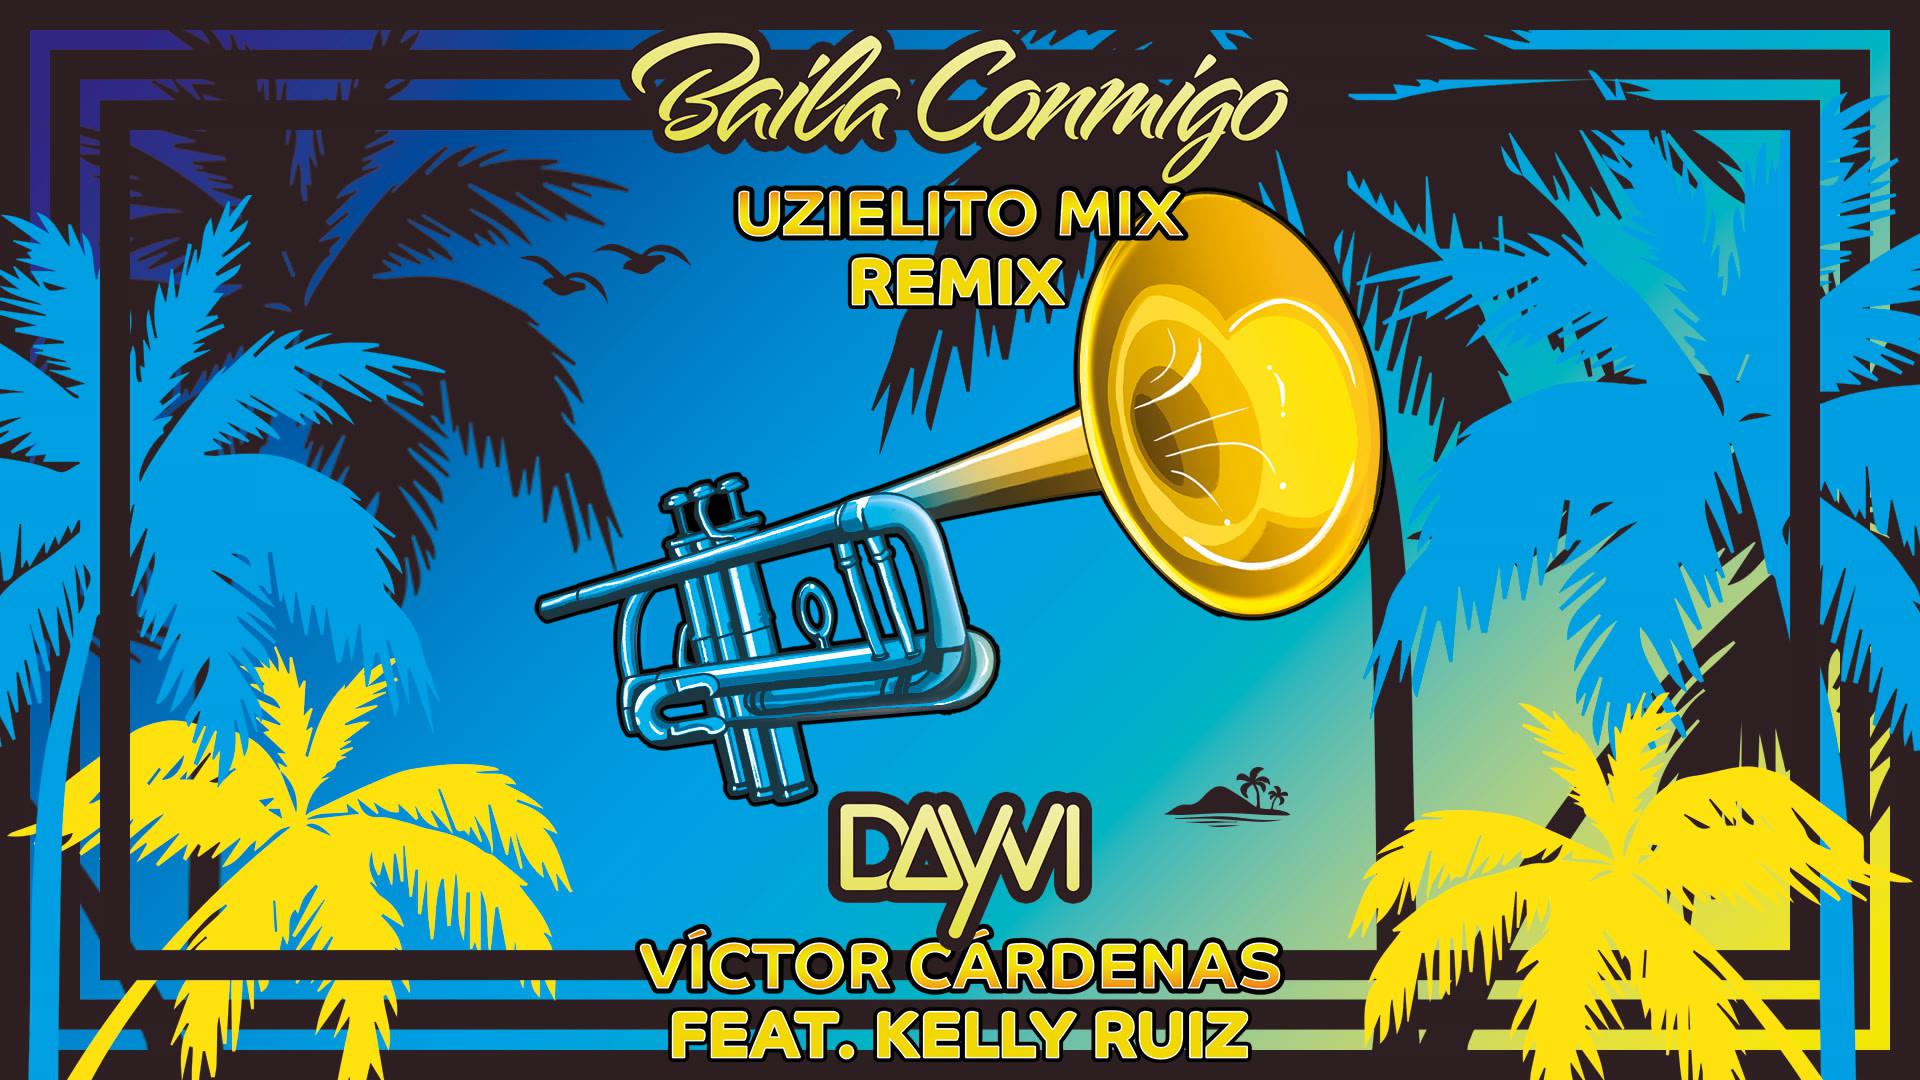 Dayvi - Baila Conmigo (Uzielito Mix Remix [Cover Audio])